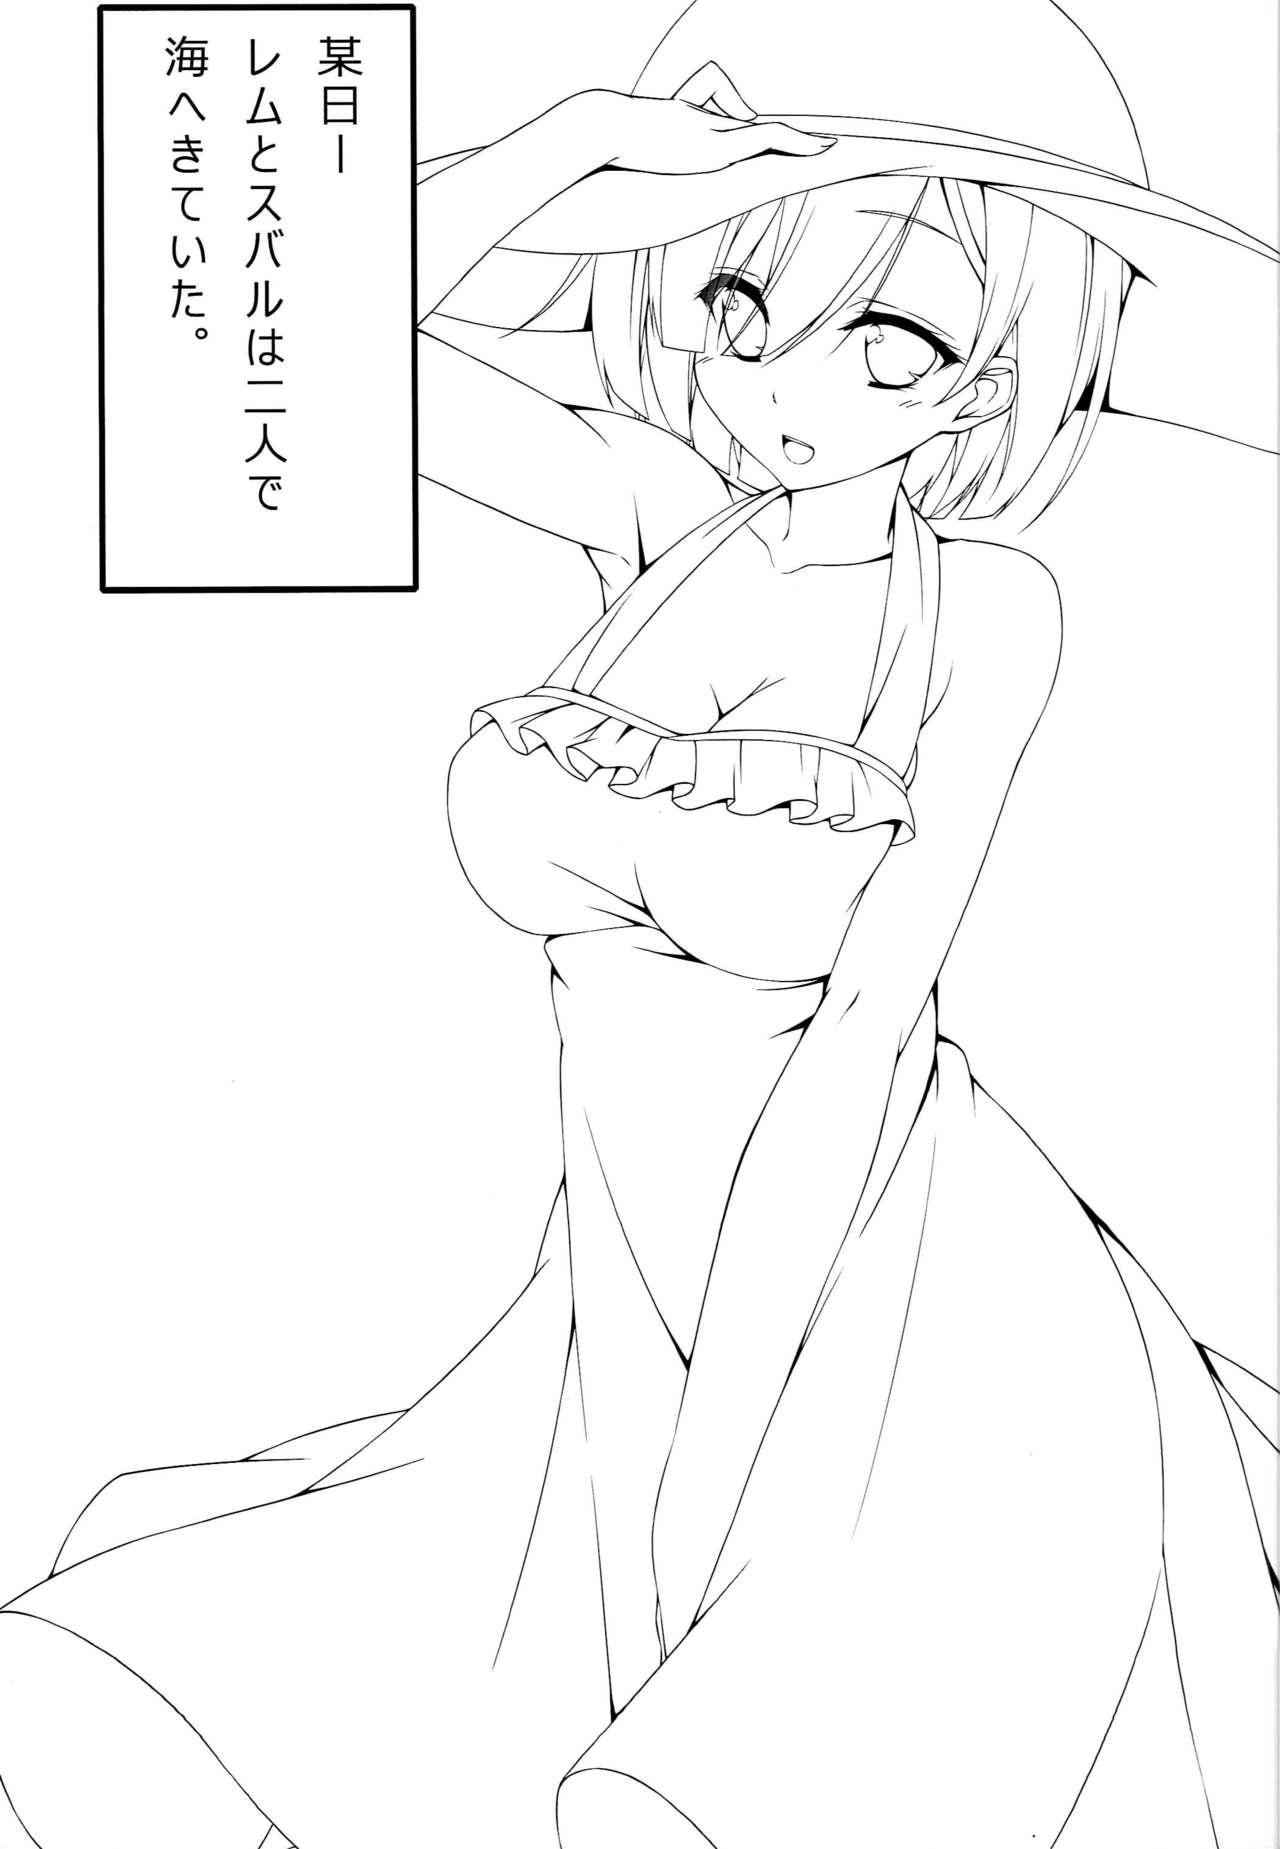 Blows Itsumo Issho ni - Re zero kara hajimeru isekai seikatsu Celebrity Sex Scene - Page 4